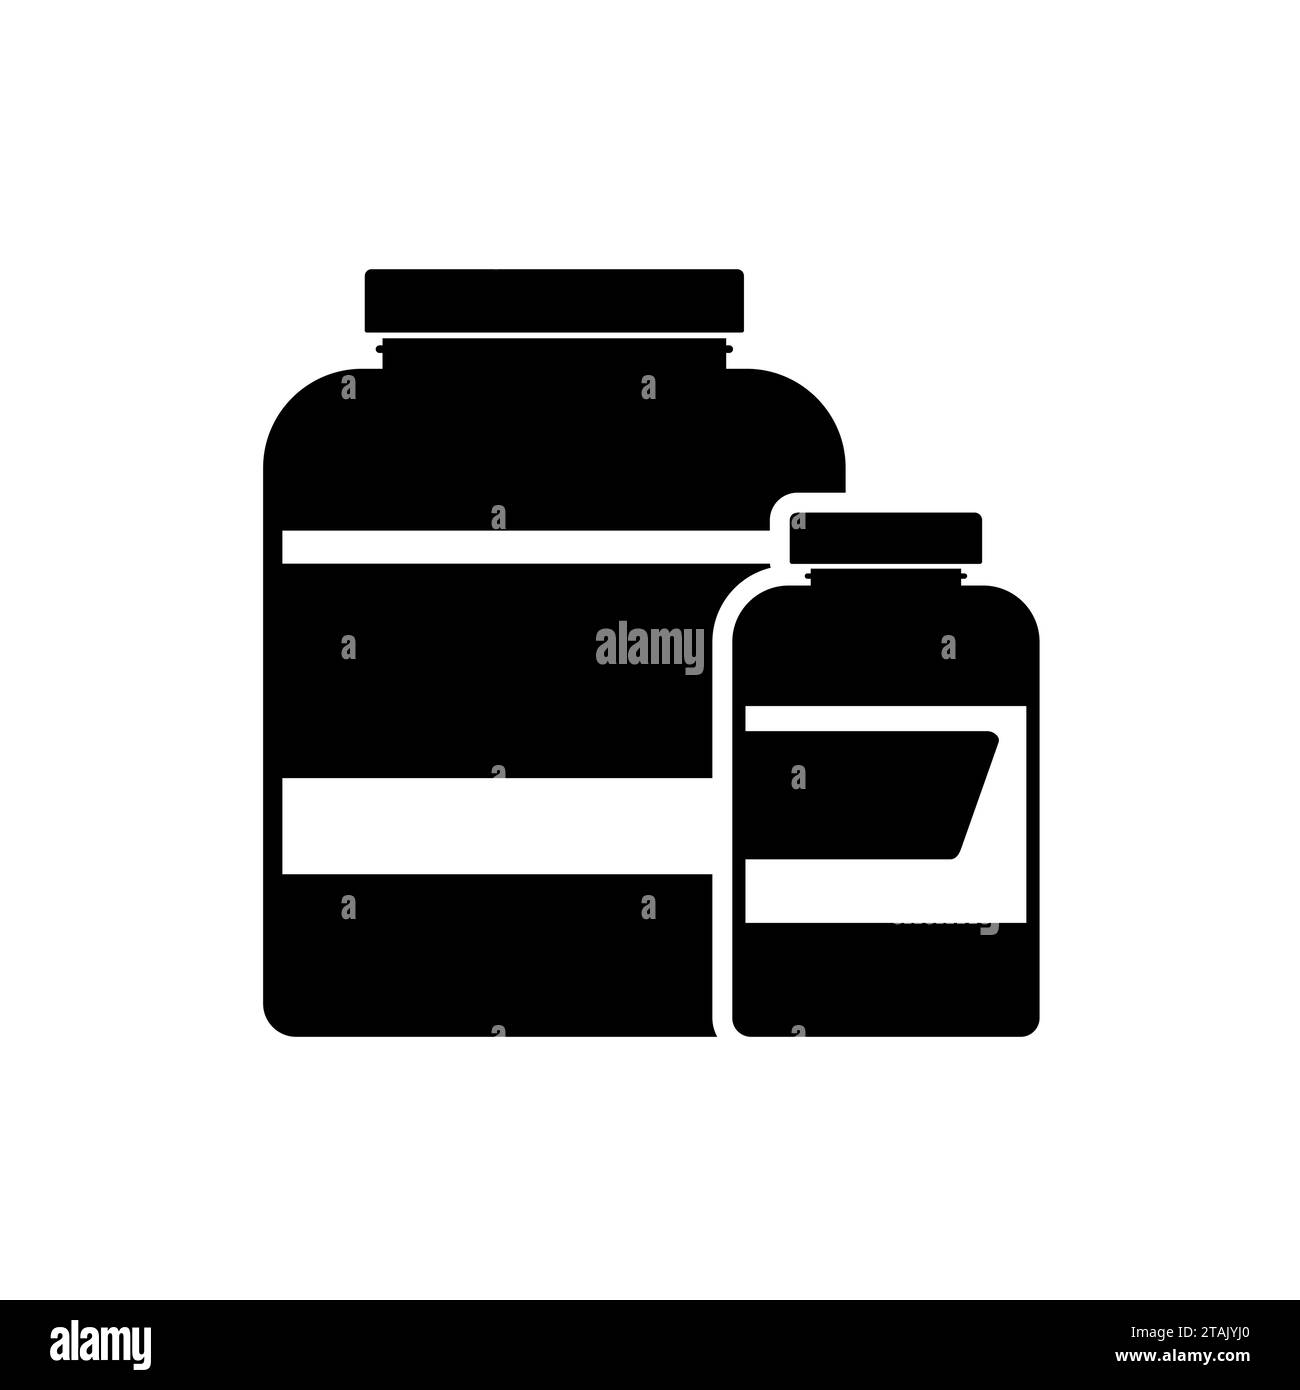 Sportnahrung Icon Container Pakete, Fitness Protein Power. Bodybuilding Sportnahrung. Glas oder Flasche mit Ergänzungsmitteln für Muskelwachstum. Fitnessstudio-Symbol Stock Vektor